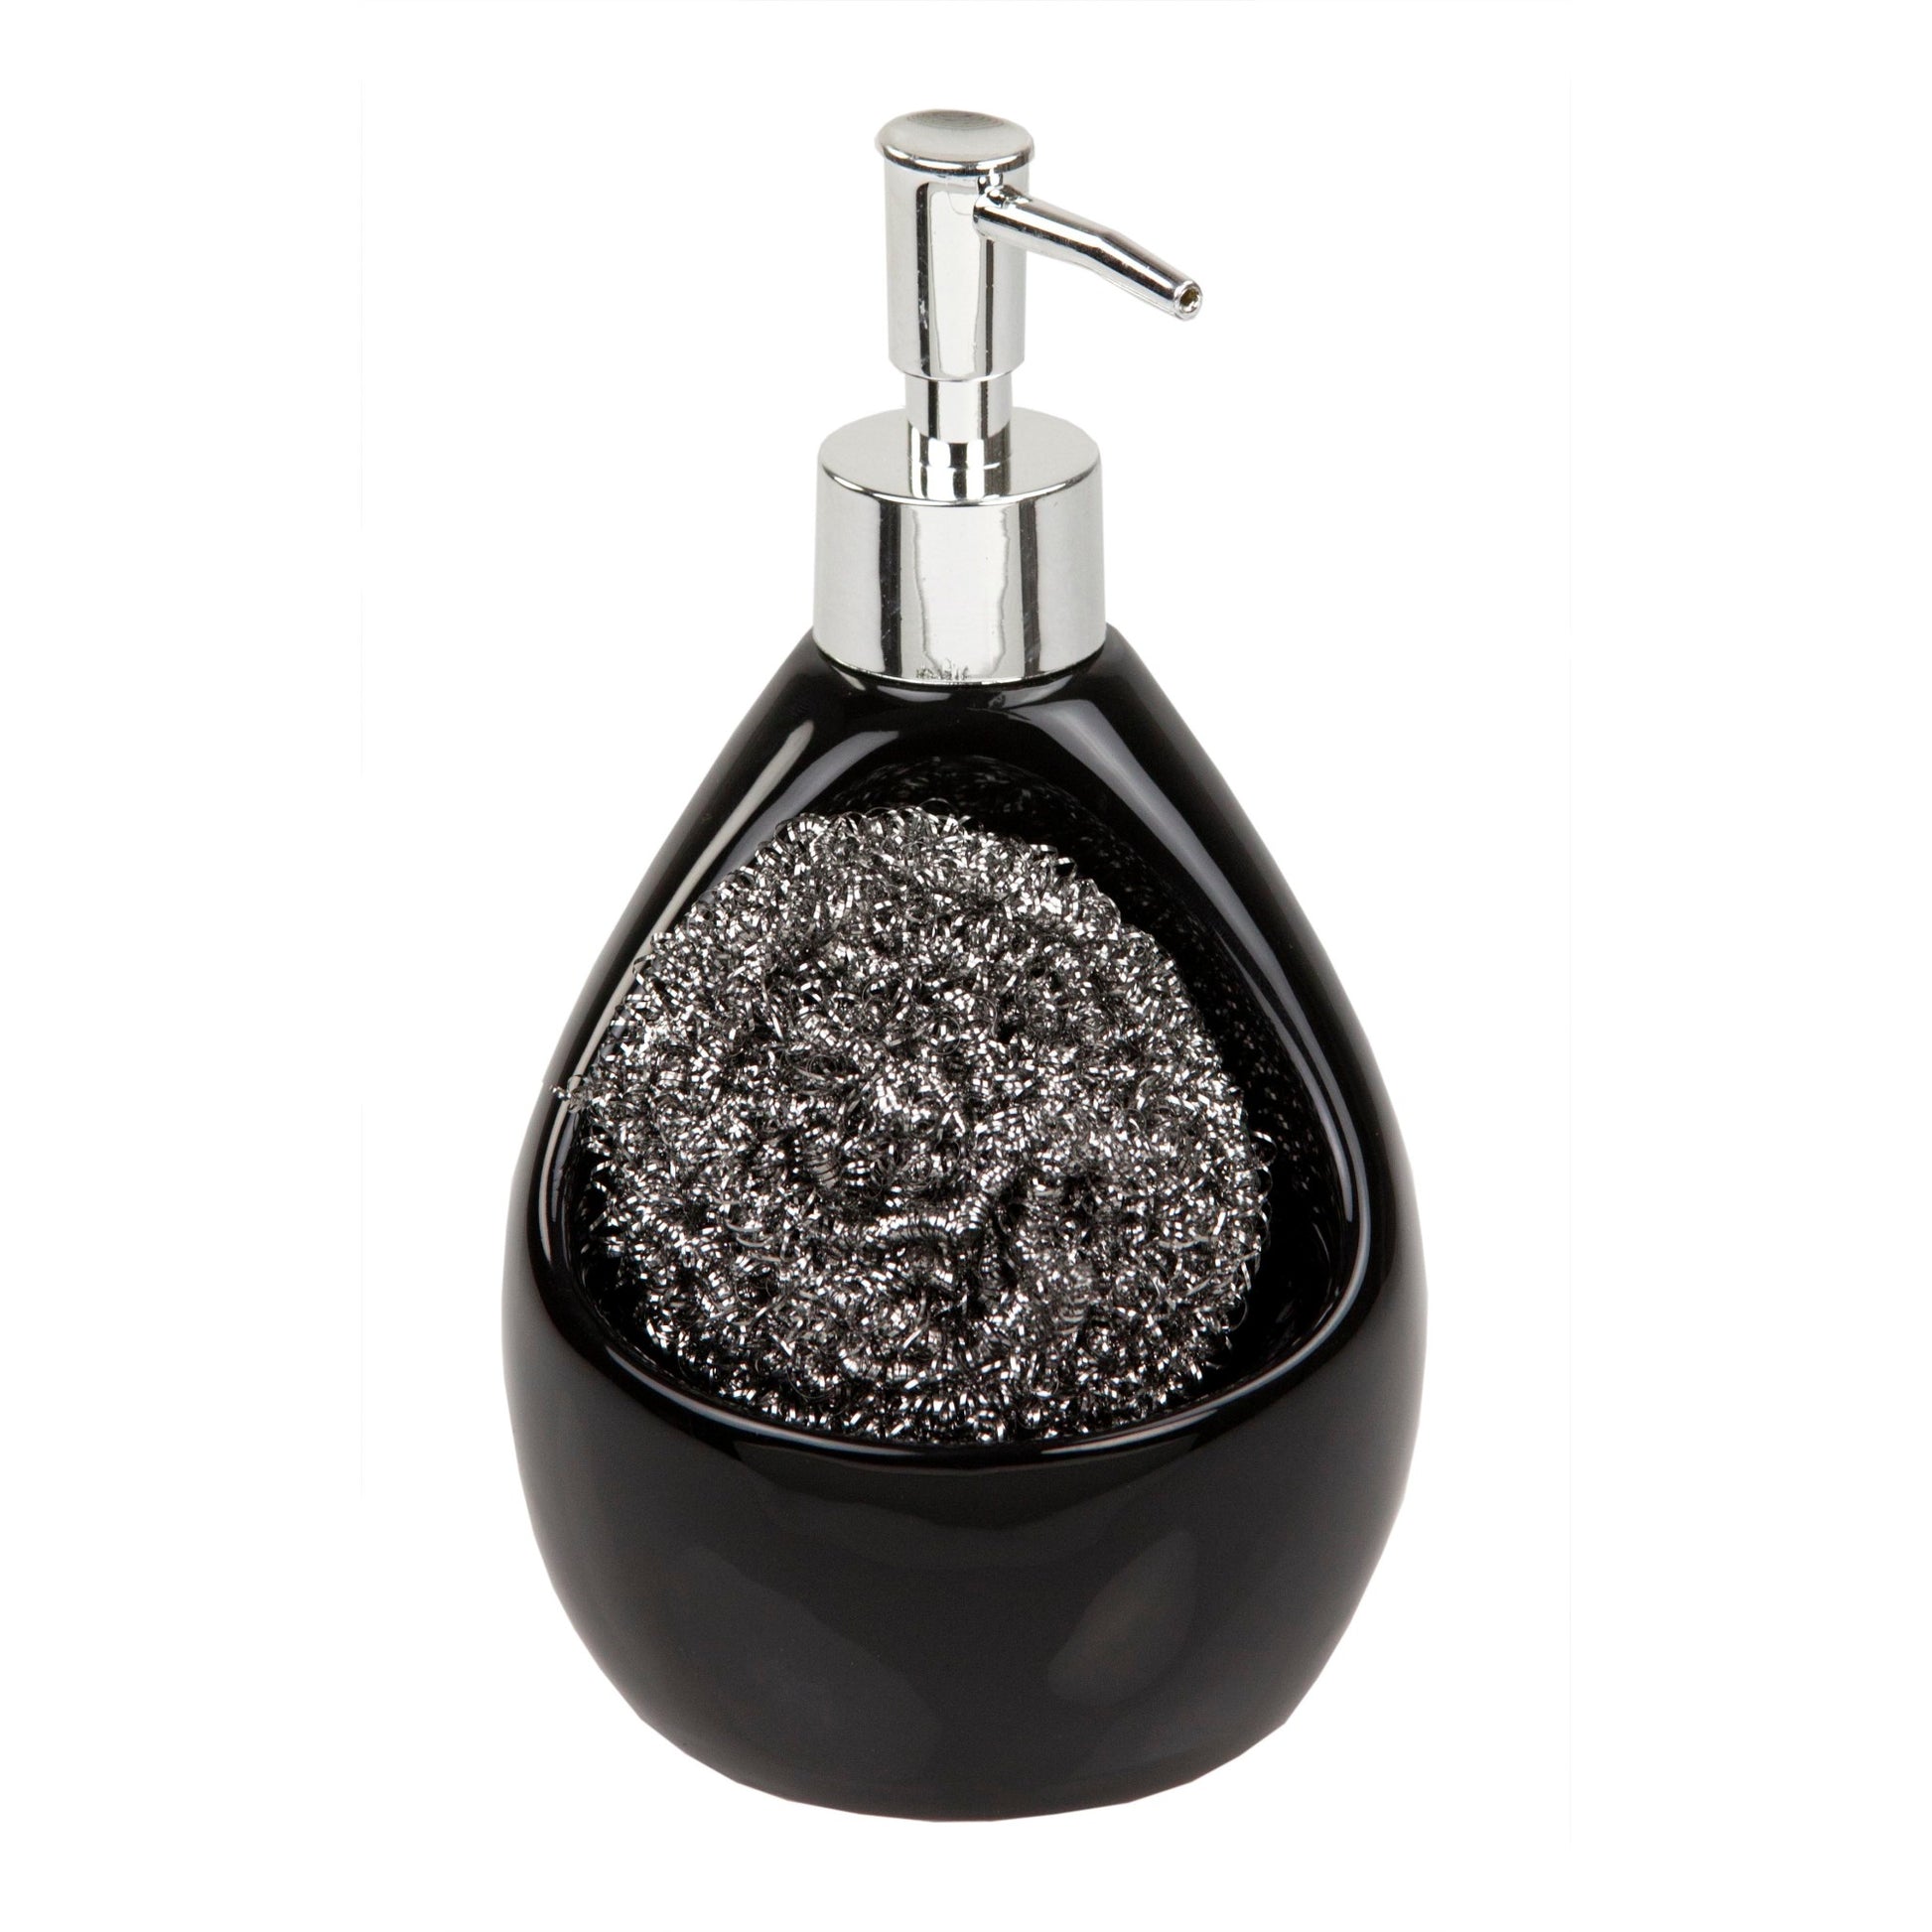 Home Basics Soap Dispenser with Sponge Holder - Black